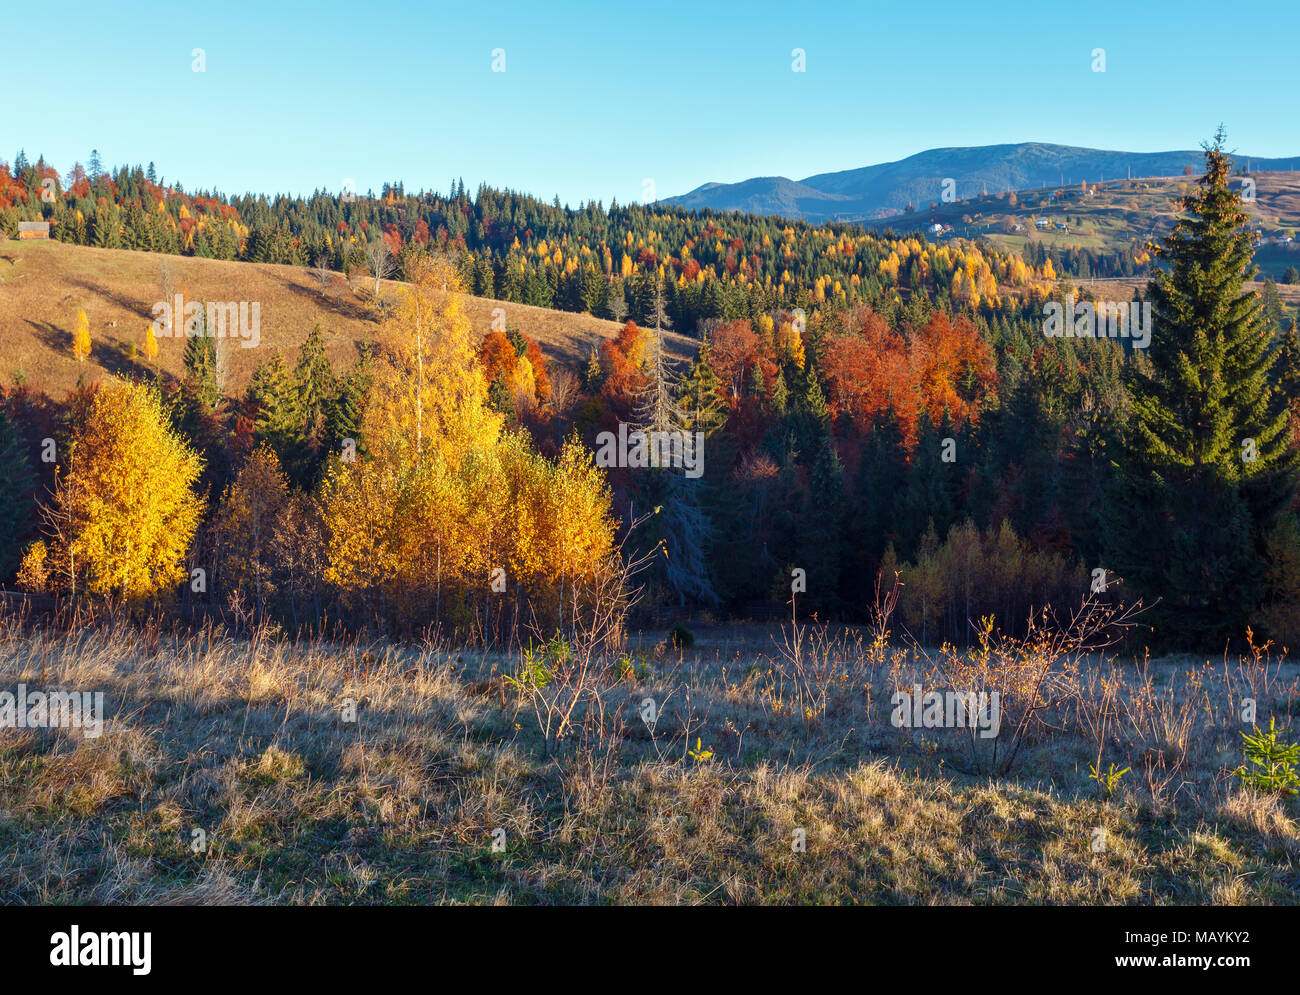 Morning Carpathian mountains and village hamlets on slopes (Yablunytsia village and pass, Ivano-Frankivsk oblast, Ukraine). Stock Photo